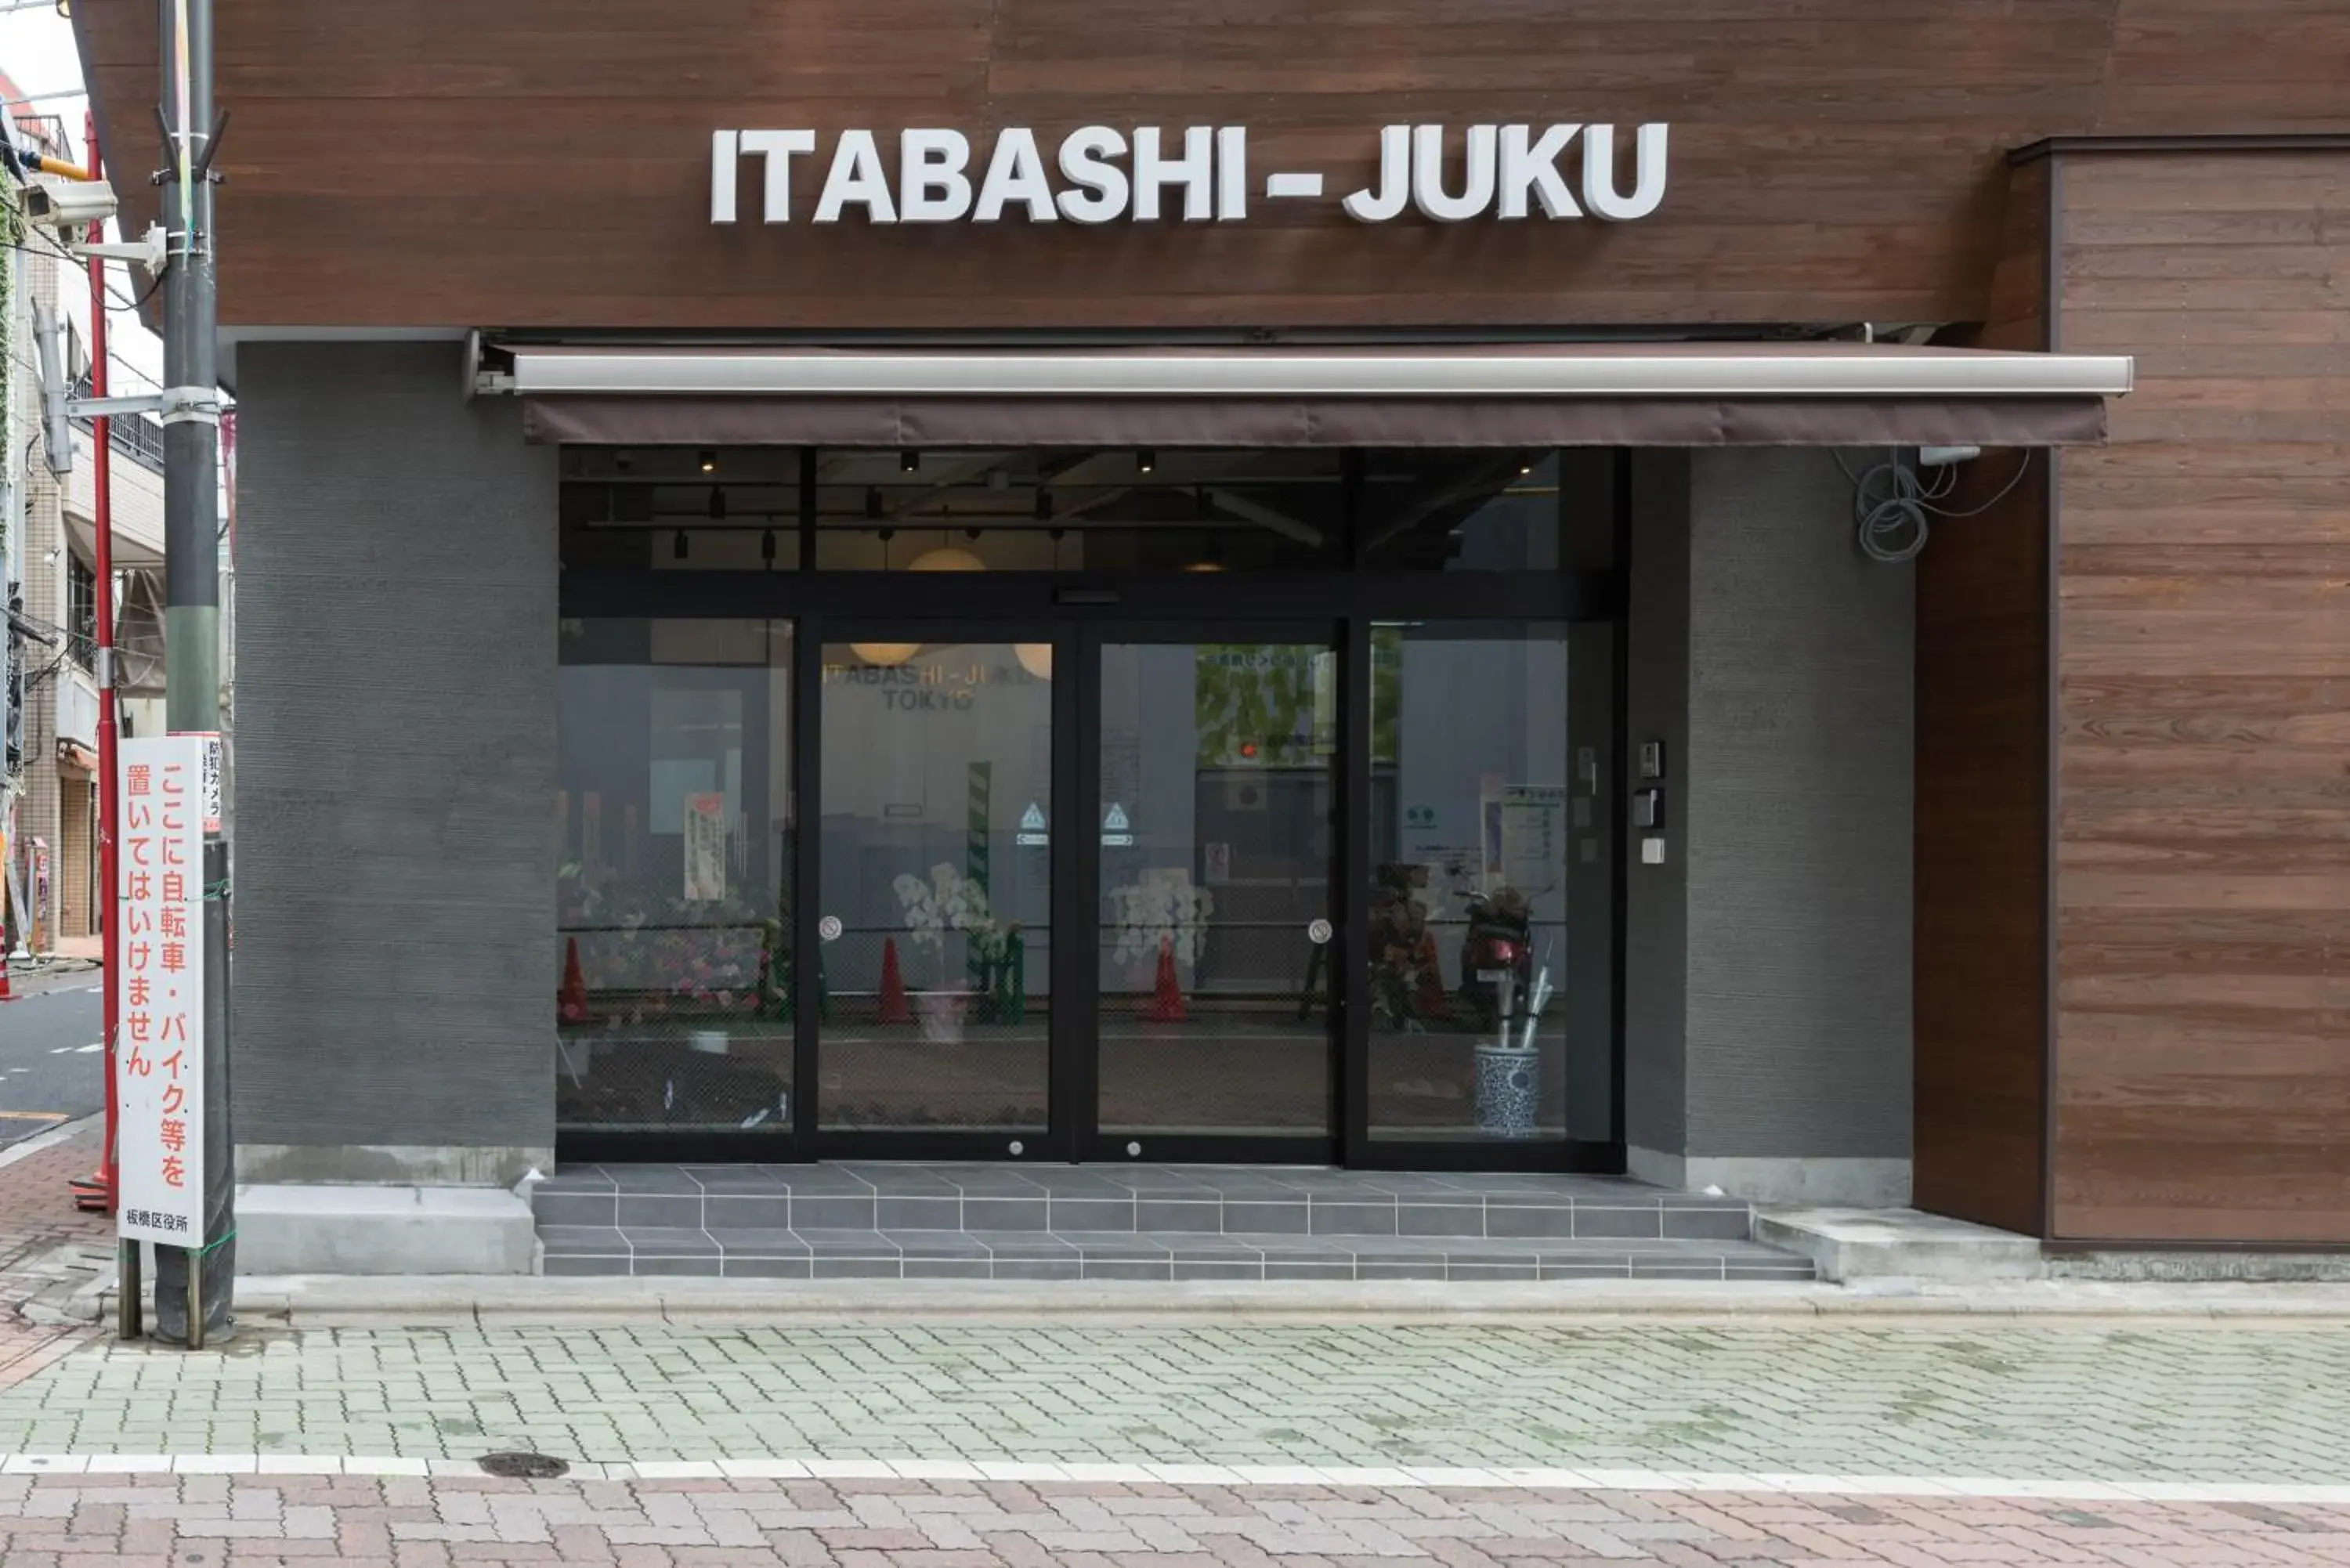 Facade/Entrance in Tokyo Guest House Itabashi-juku